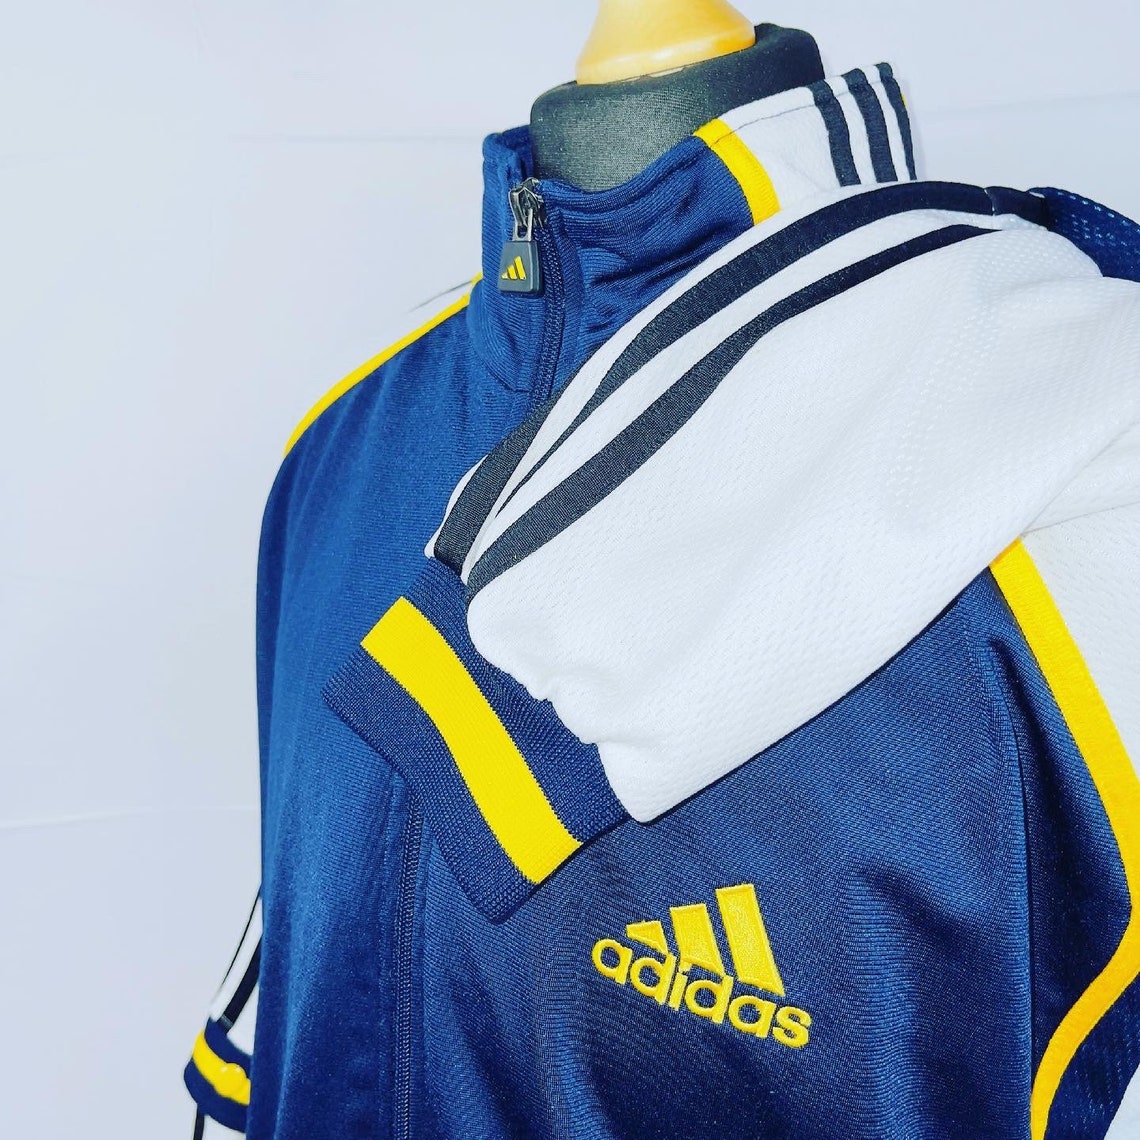 STUNNING unisex 90s Vintage Adidas Tracksuit Jacket Size | Etsy